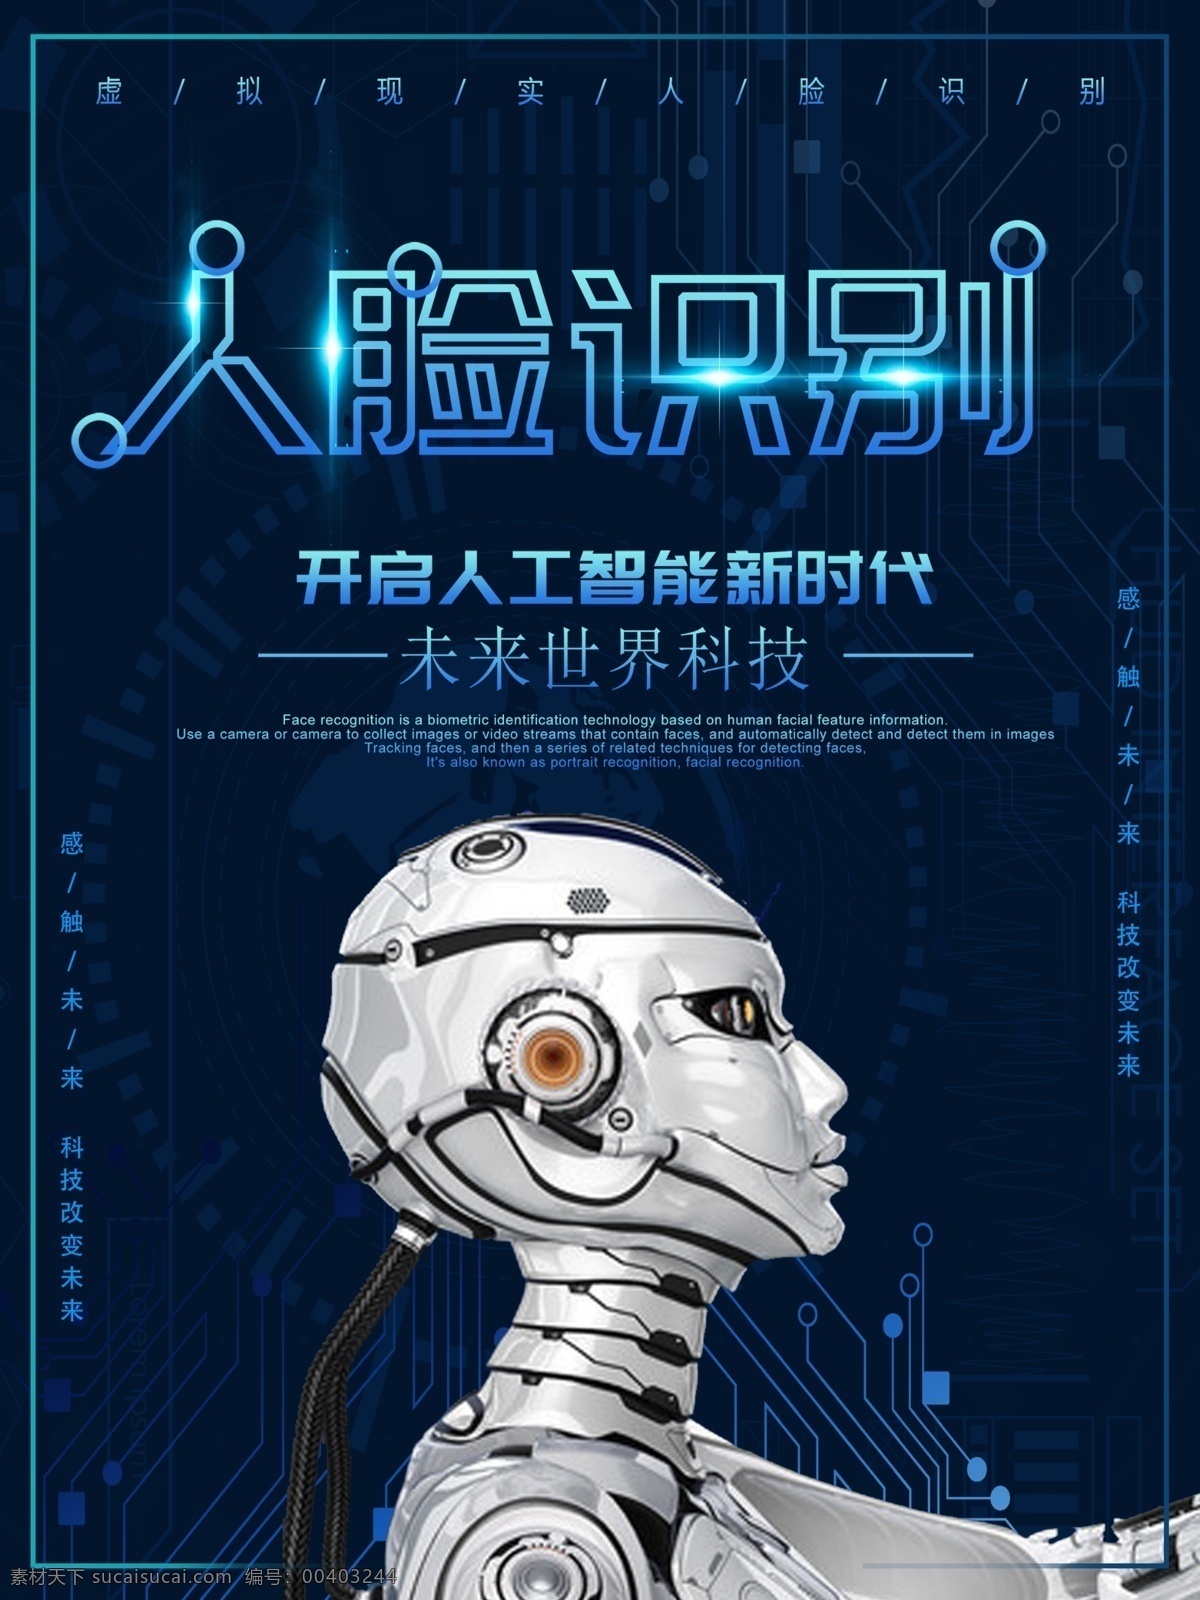 2018 年 蓝色 科技 人脸 识别 商业 海报 深蓝 人脸识别 机器人 商业海报